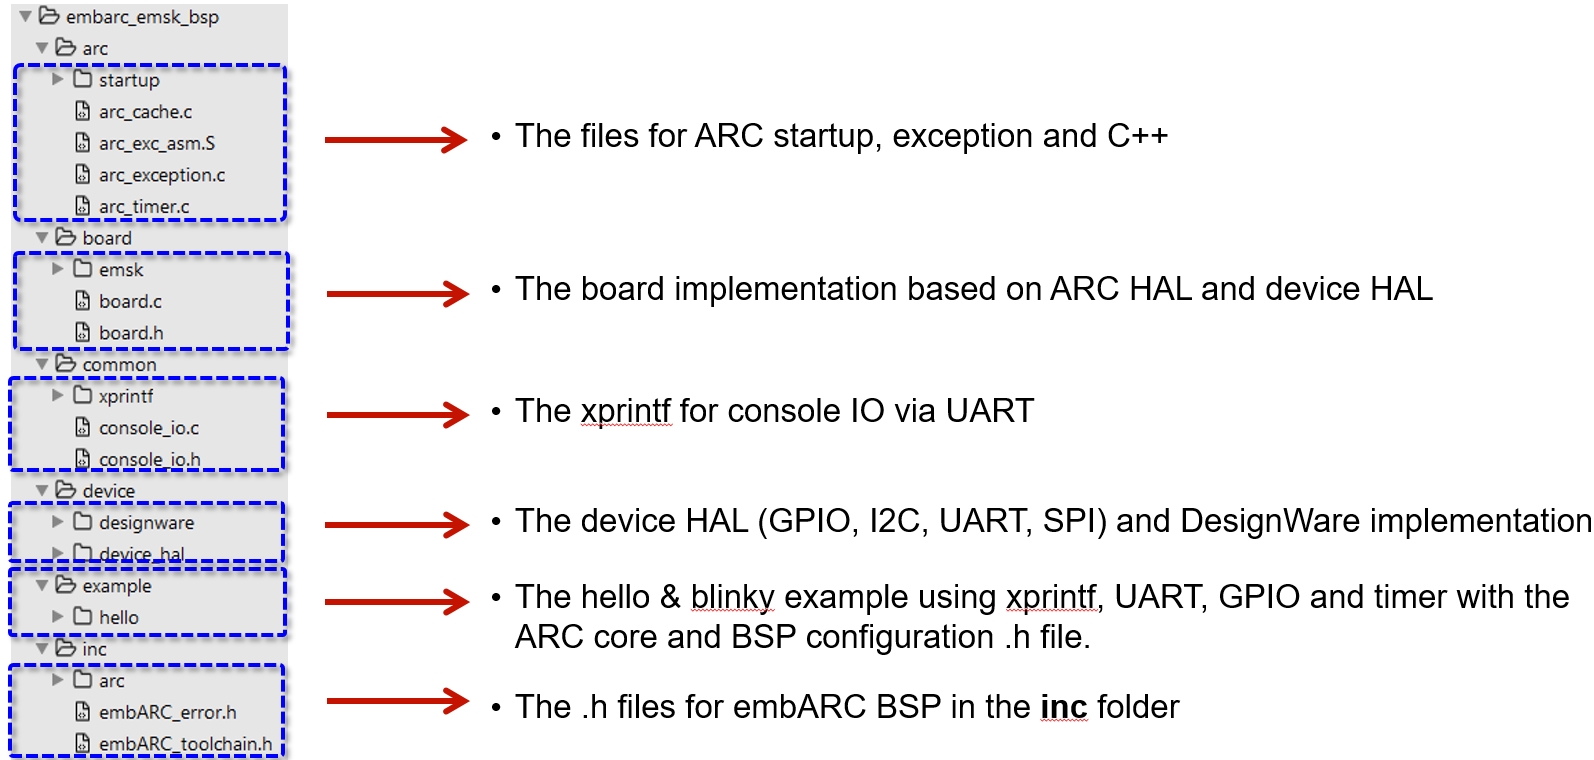 embARC BSP Files